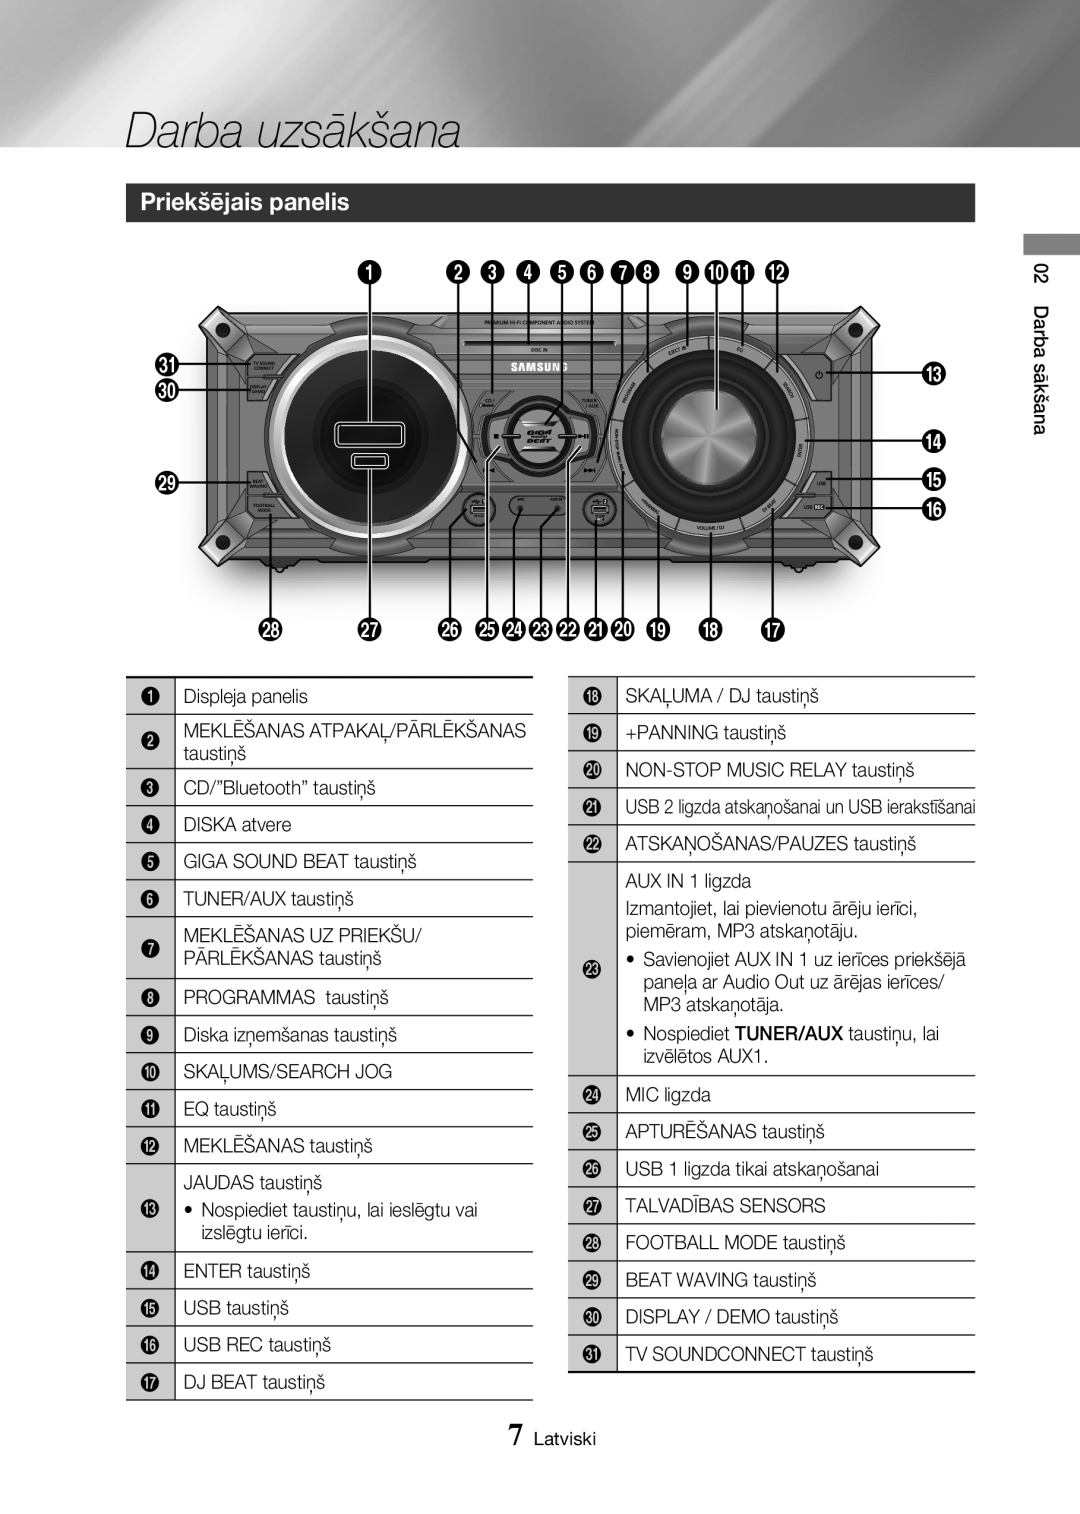 Samsung MX-HS8000/EN manual Darba uzsākšana, Priekšējais panelis, 2 3 4 5678 90! @, f edcba 